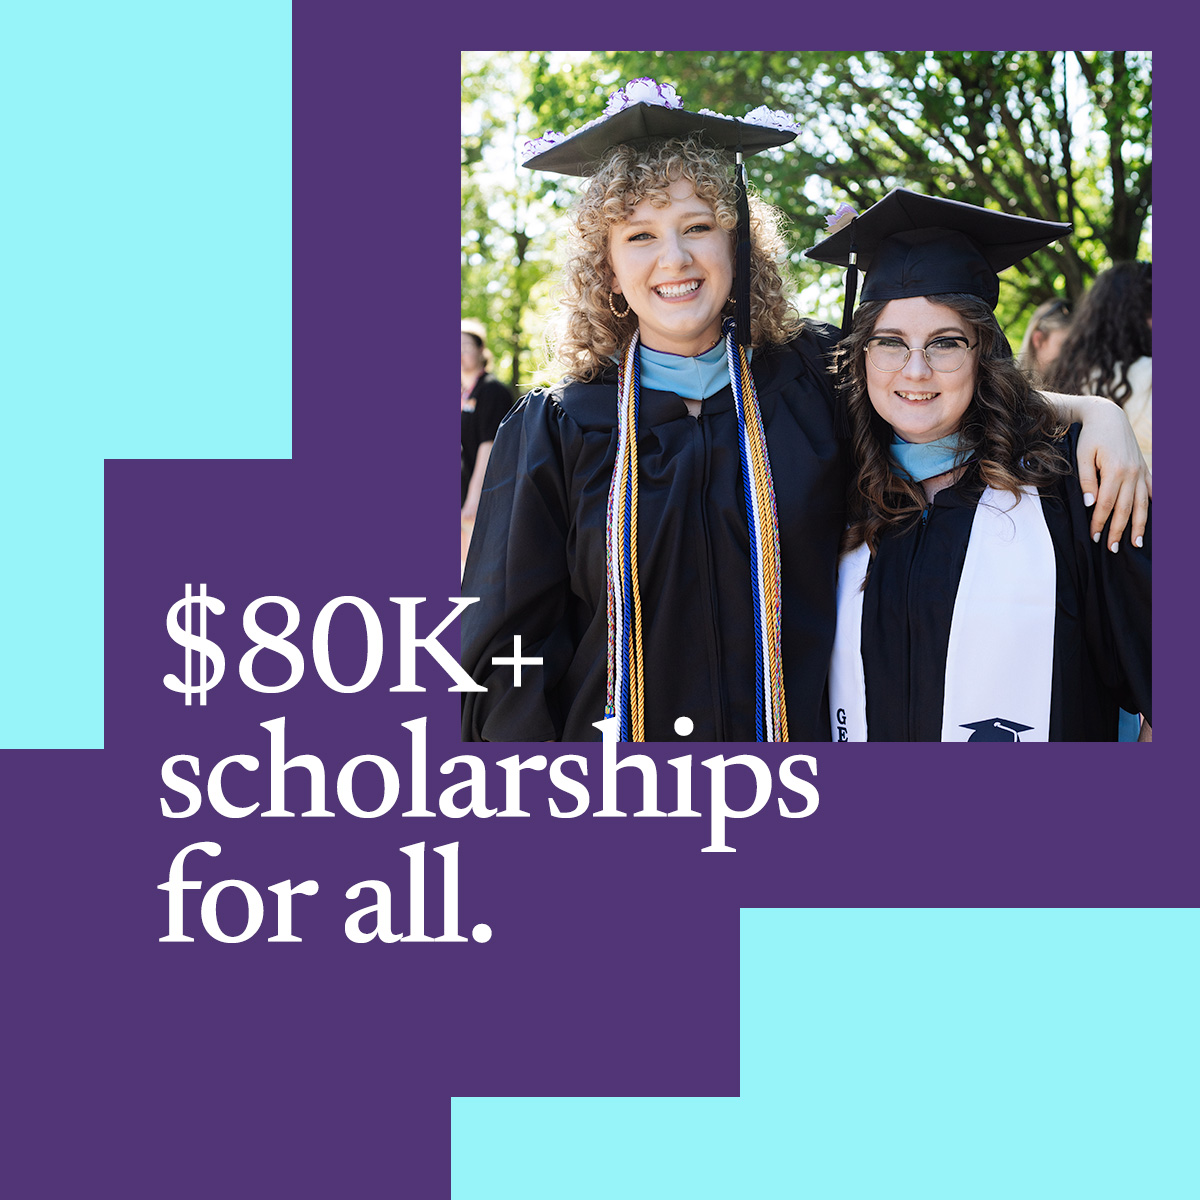 $80K+ scholarships for all.